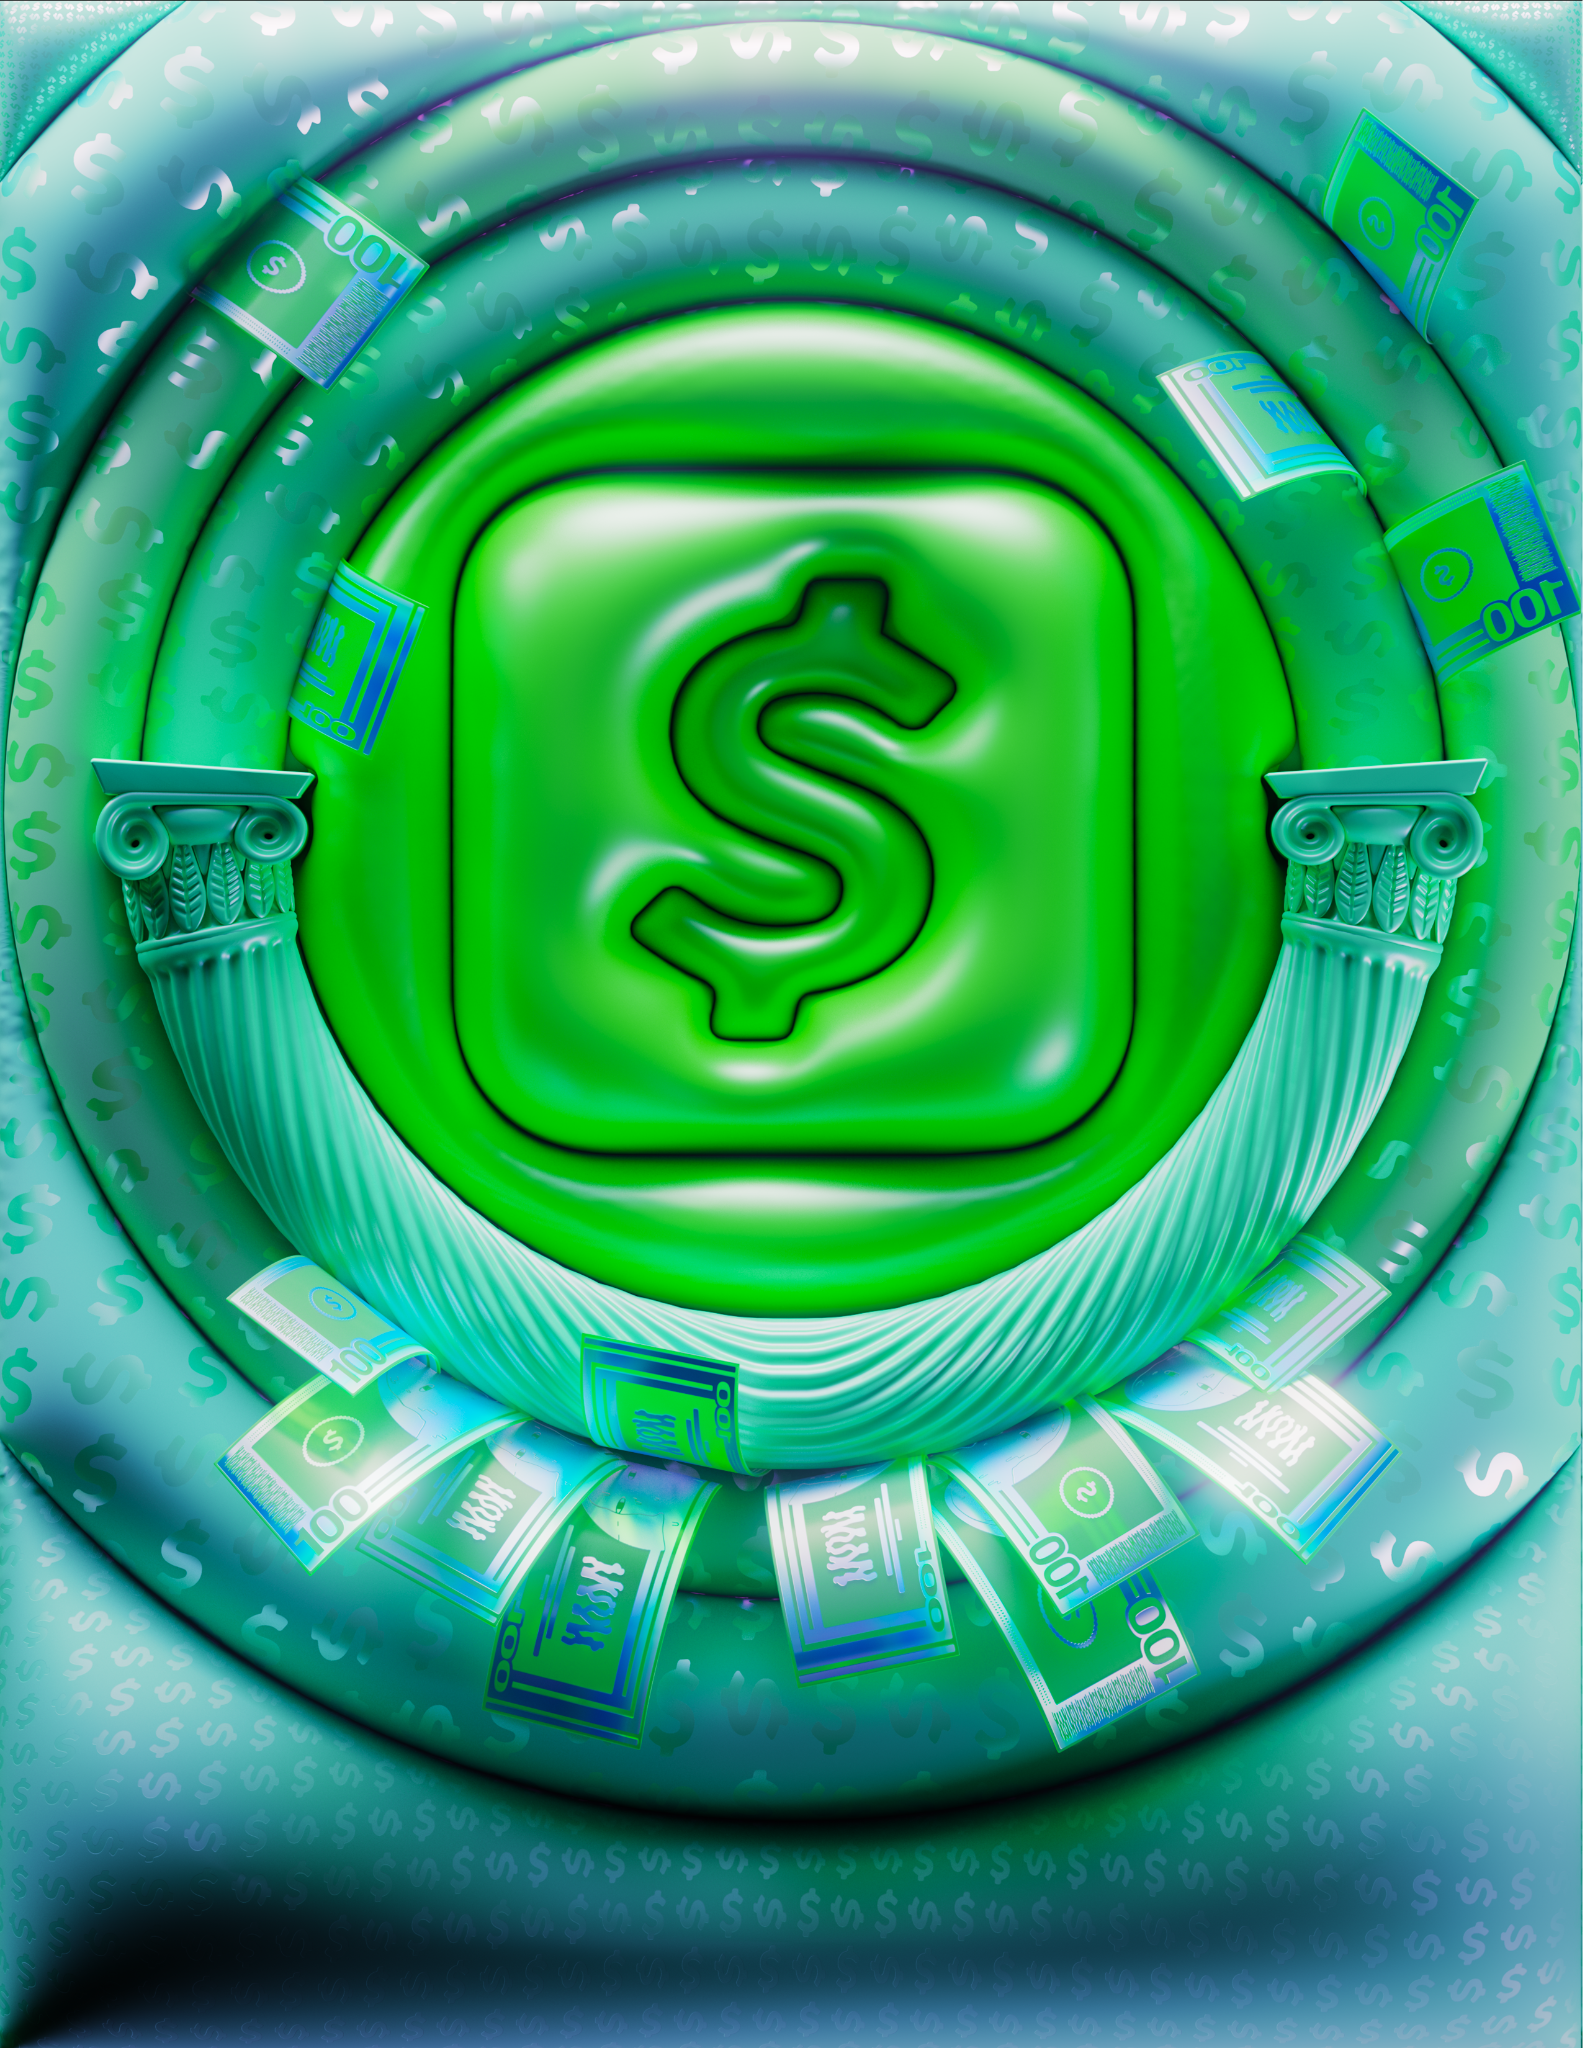 Cash App Image